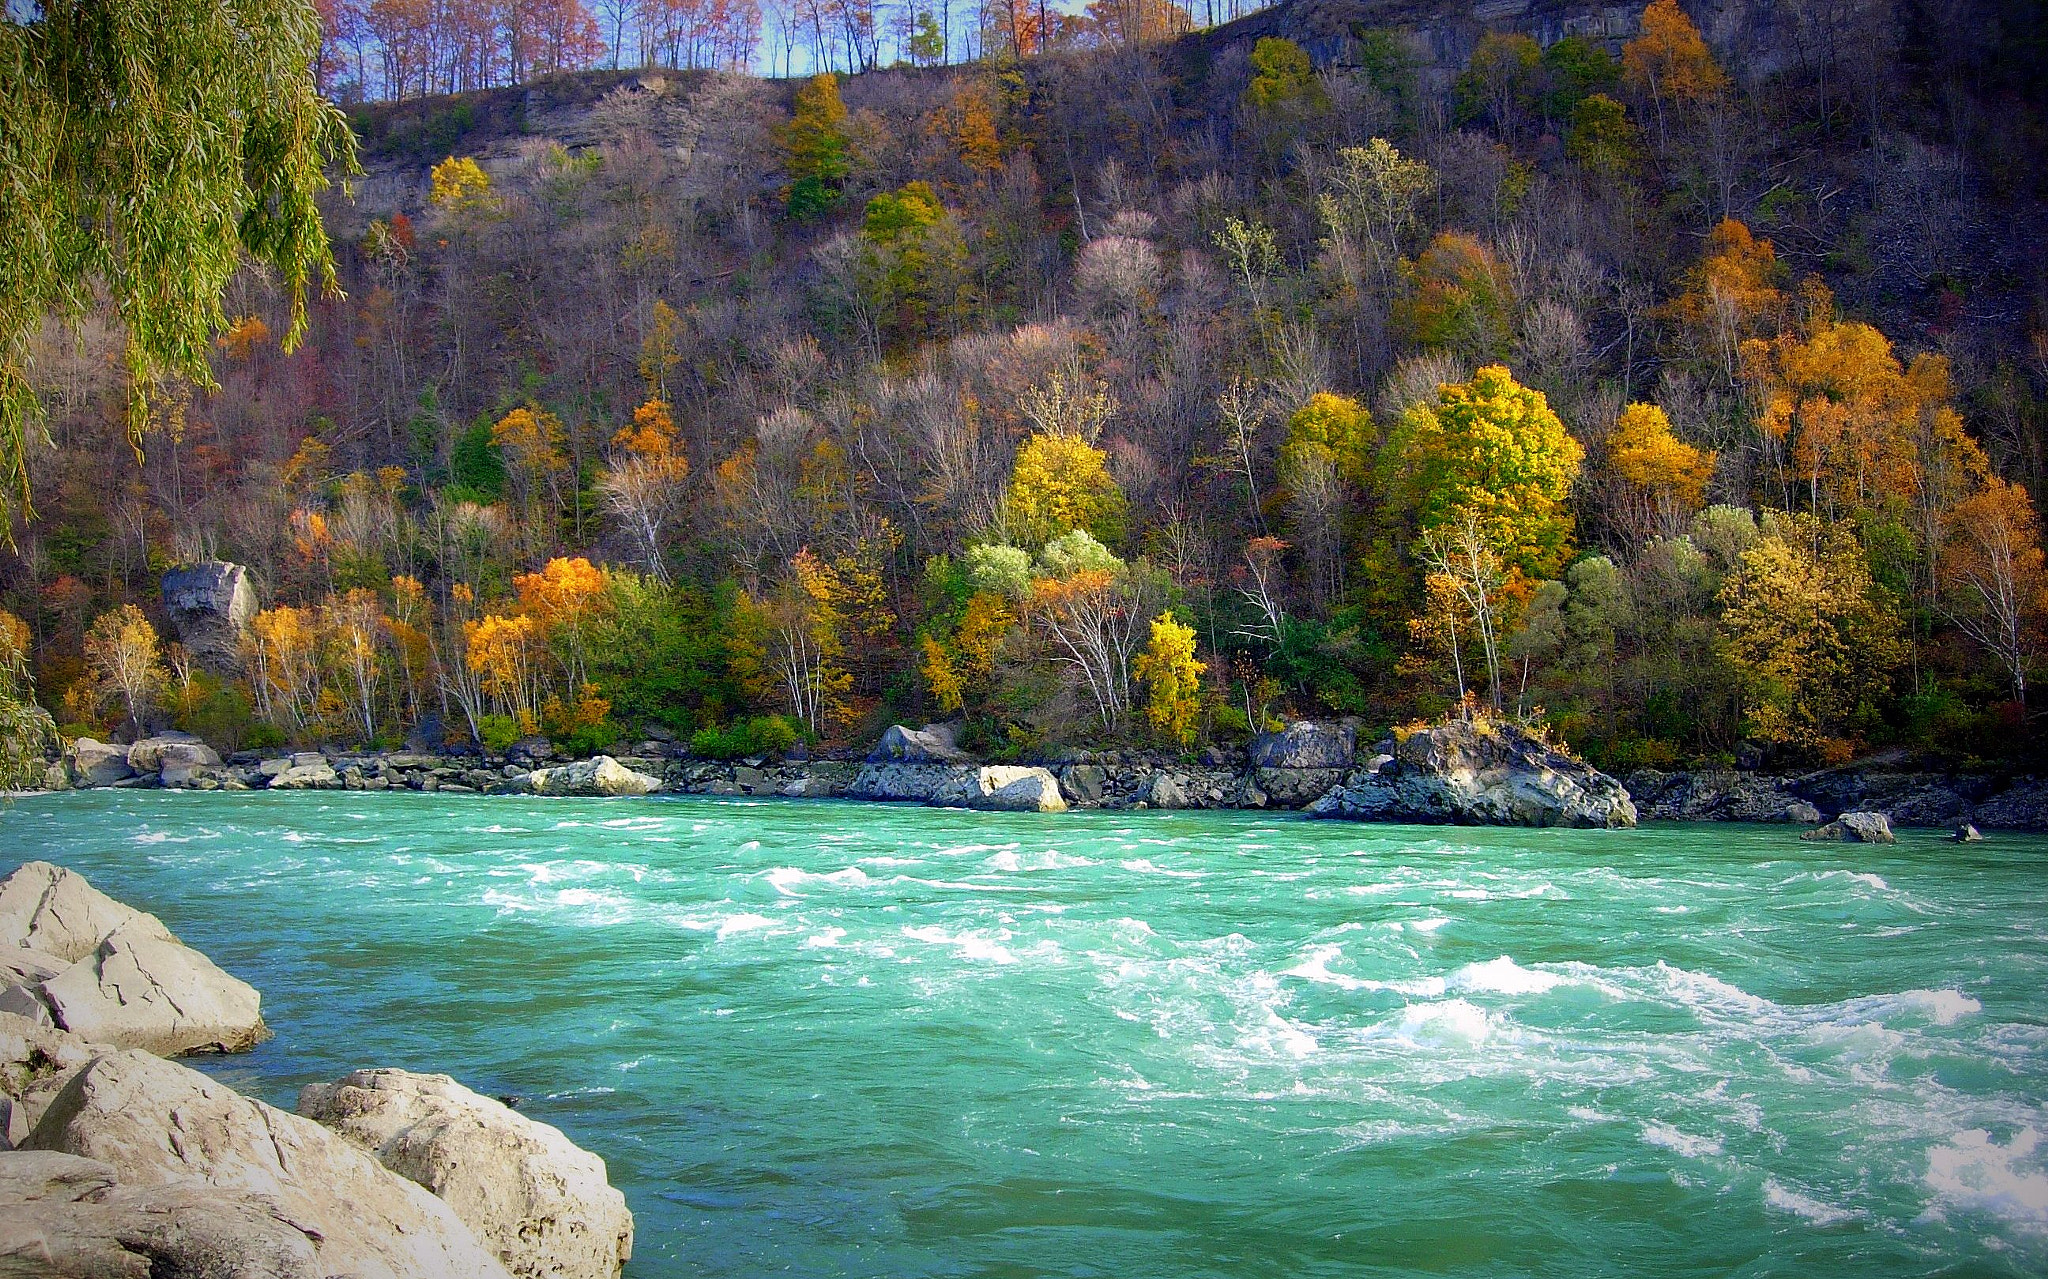 Nikon E5200 sample photo. The "green" river photography